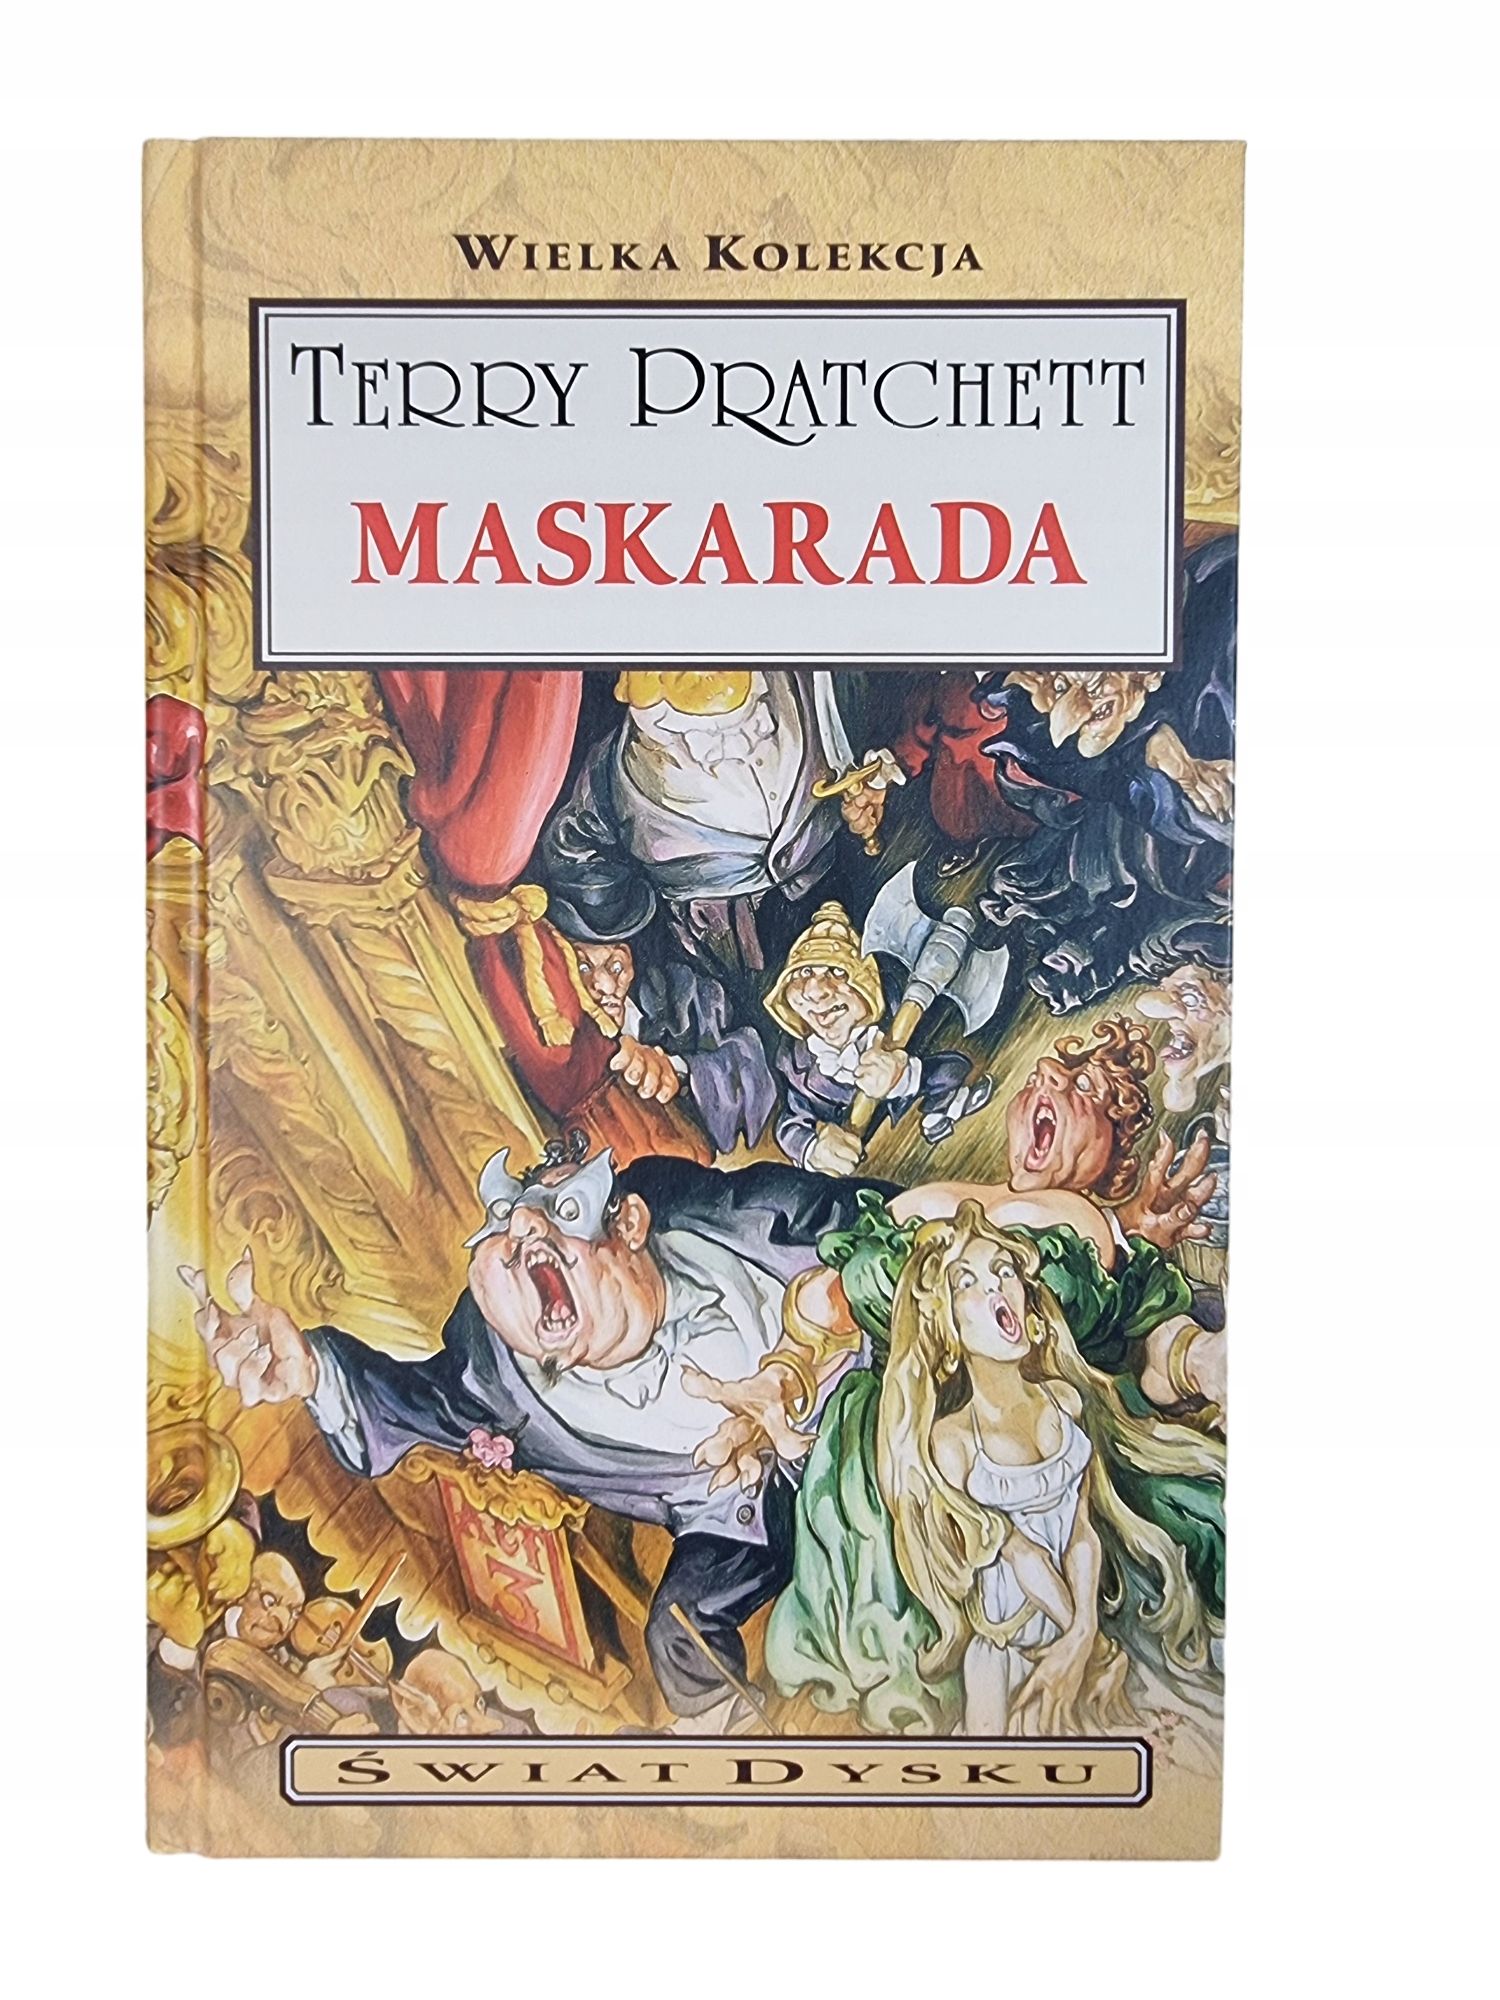 Maskarada / Wielka Kolekcja Świat Dysku / Terry Pratchett